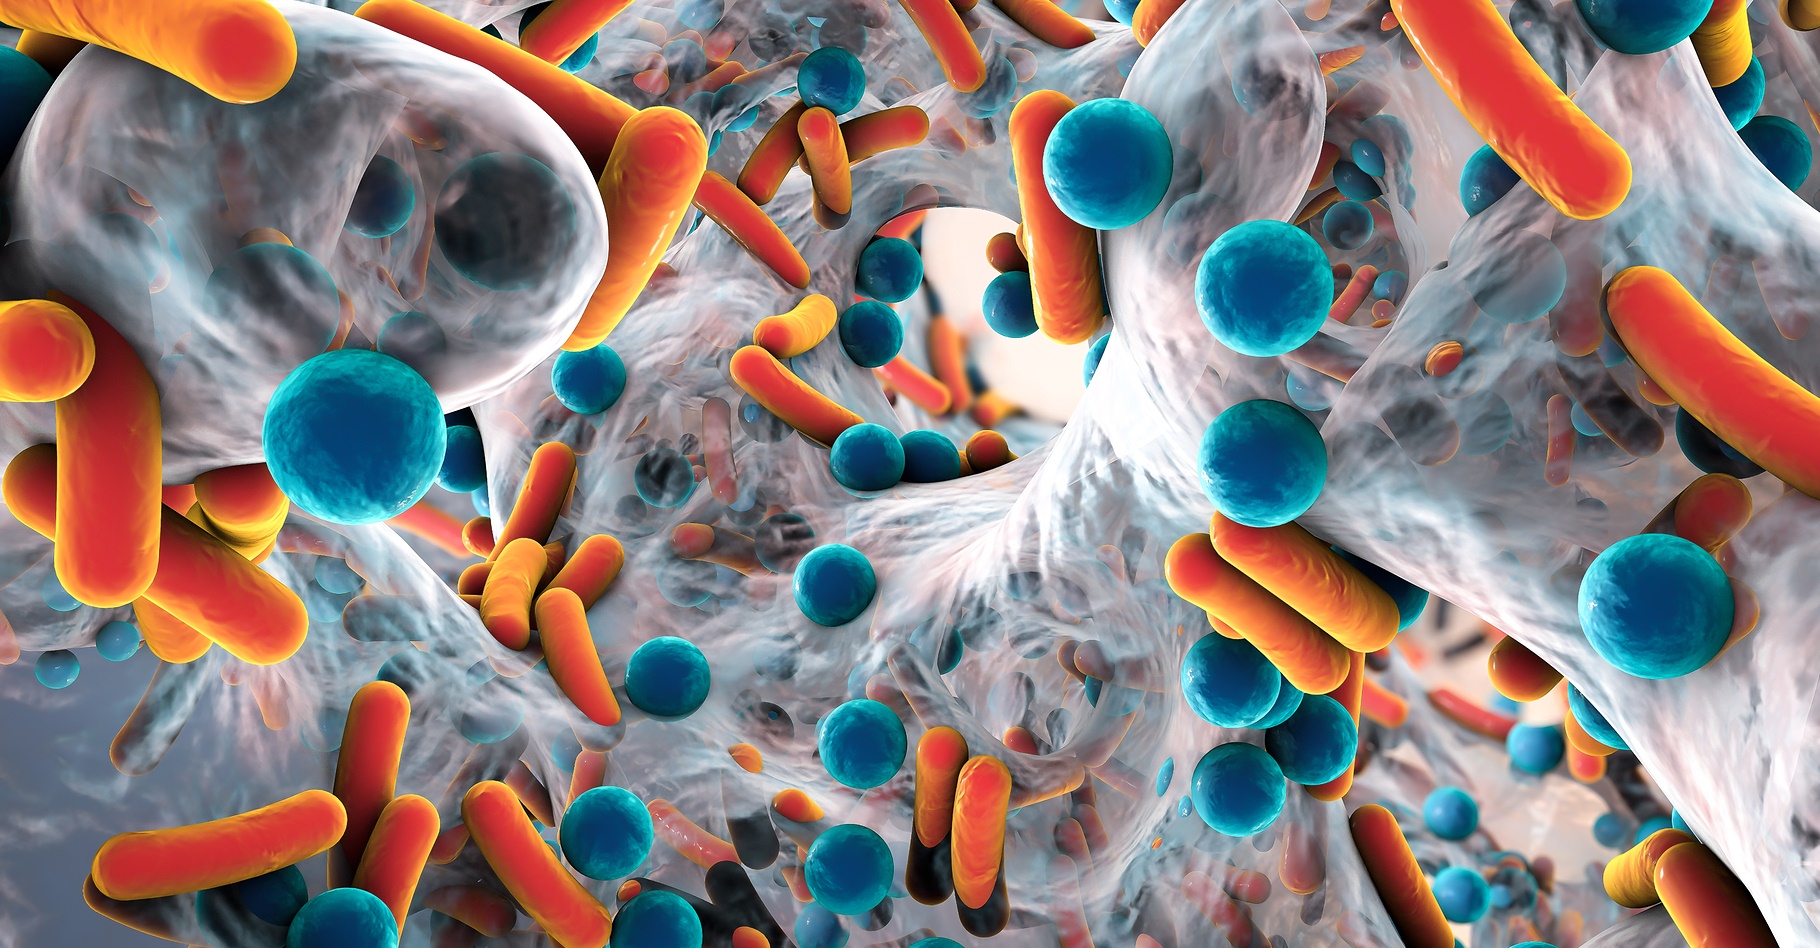 Les bactéries « superbugs » qui résistent aux traitements antibiotiques, représentent un enjeu de santé publique. © Kateryna Kon, Shutterstock